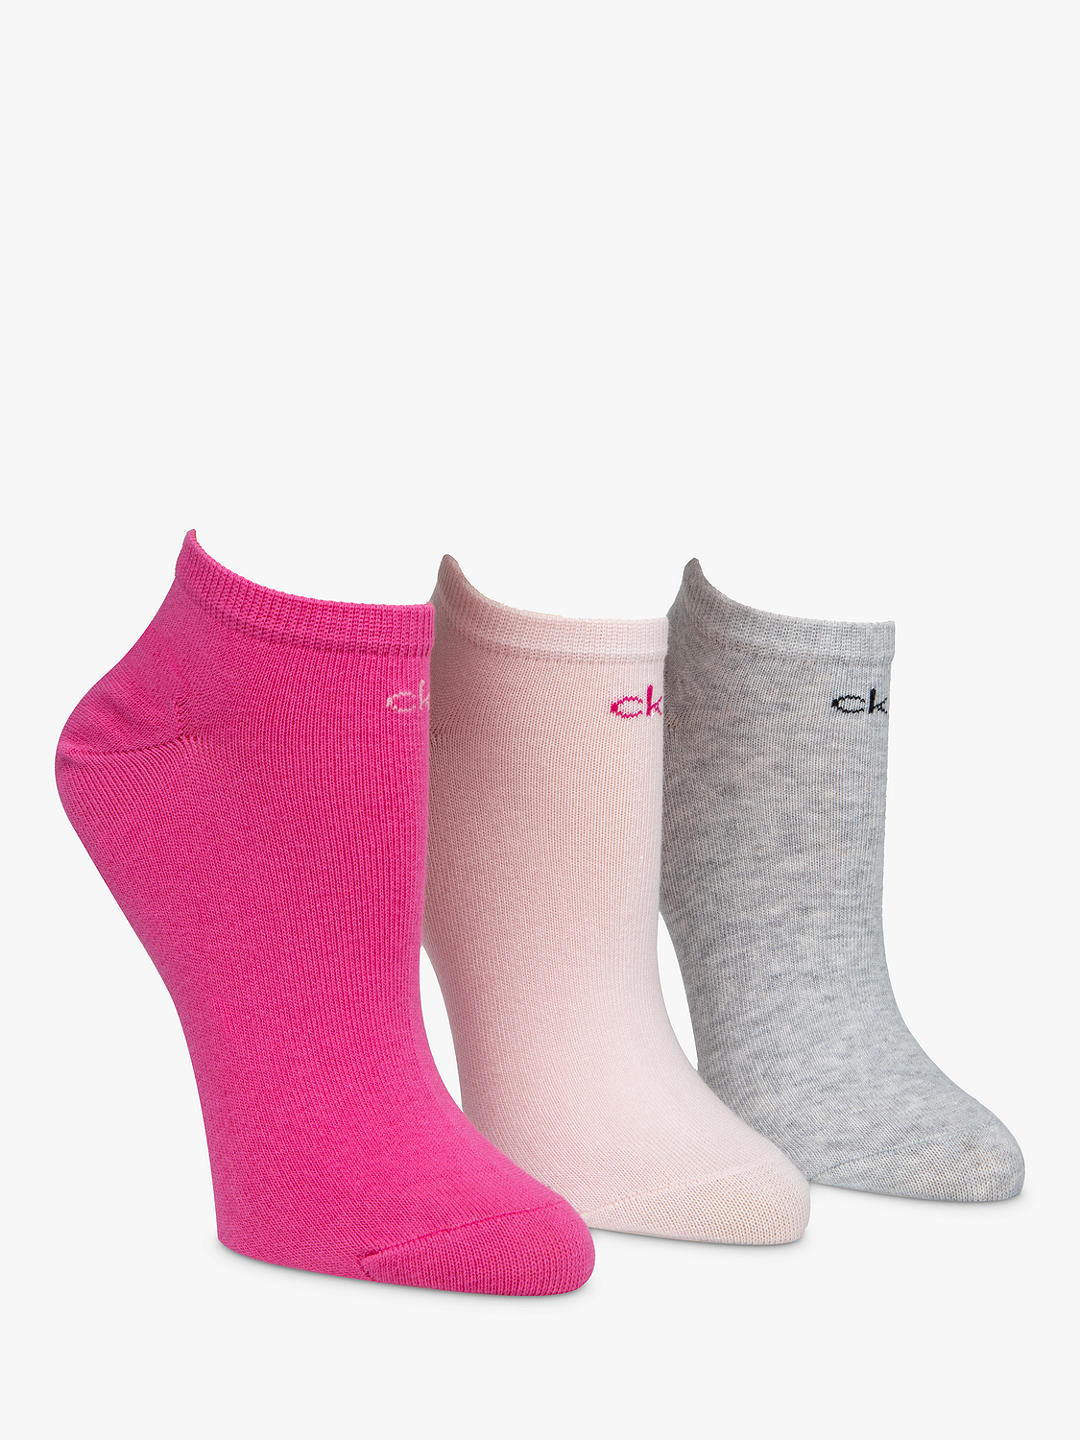 Calvin Klein Chloe Liner Socks, Pack of 3, Pink/Multi